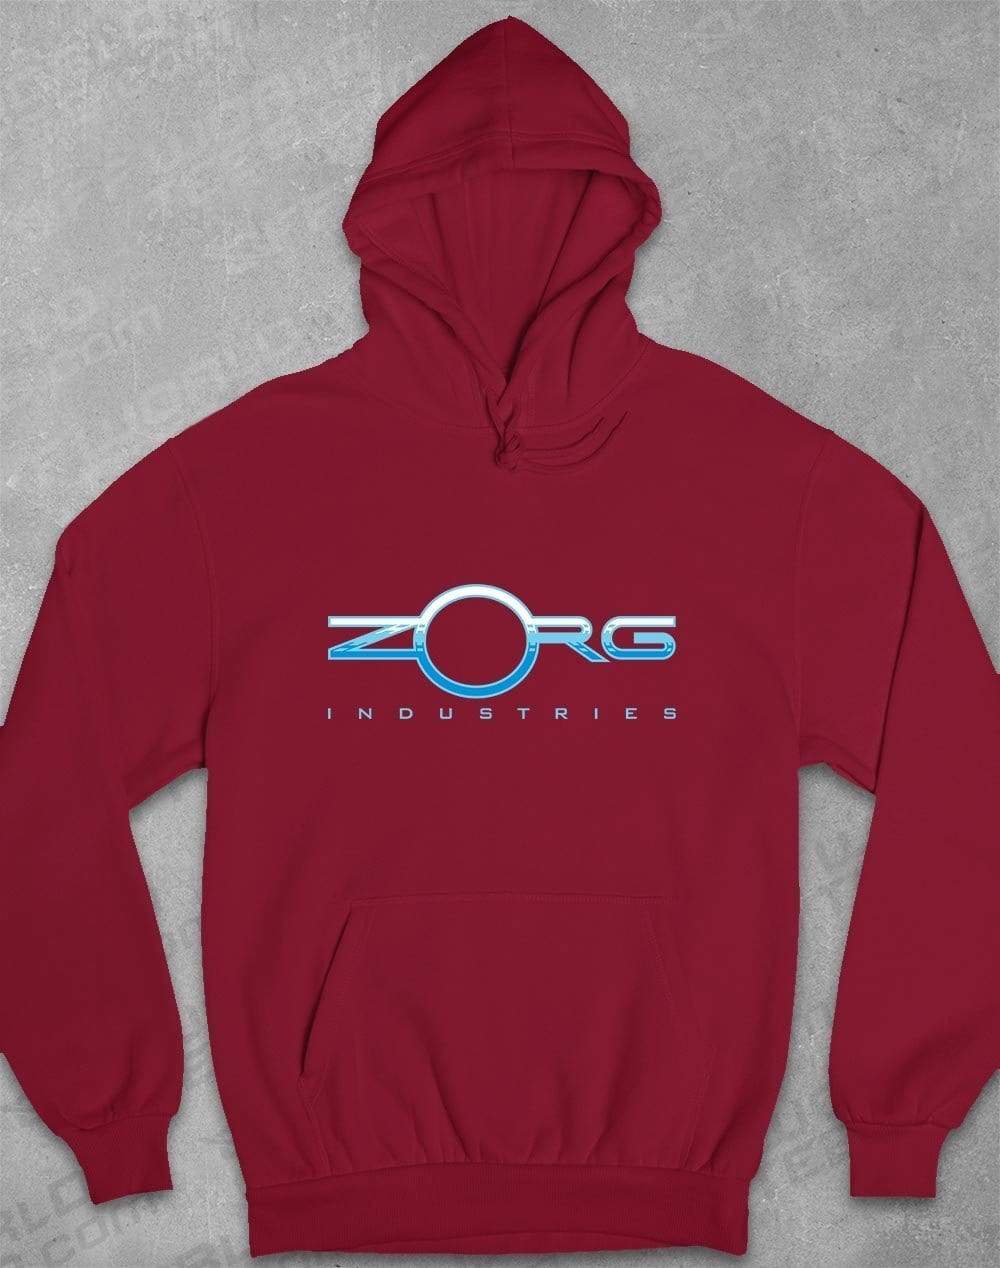 Zorg Industries Hoodie S / Burgundy  - Off World Tees